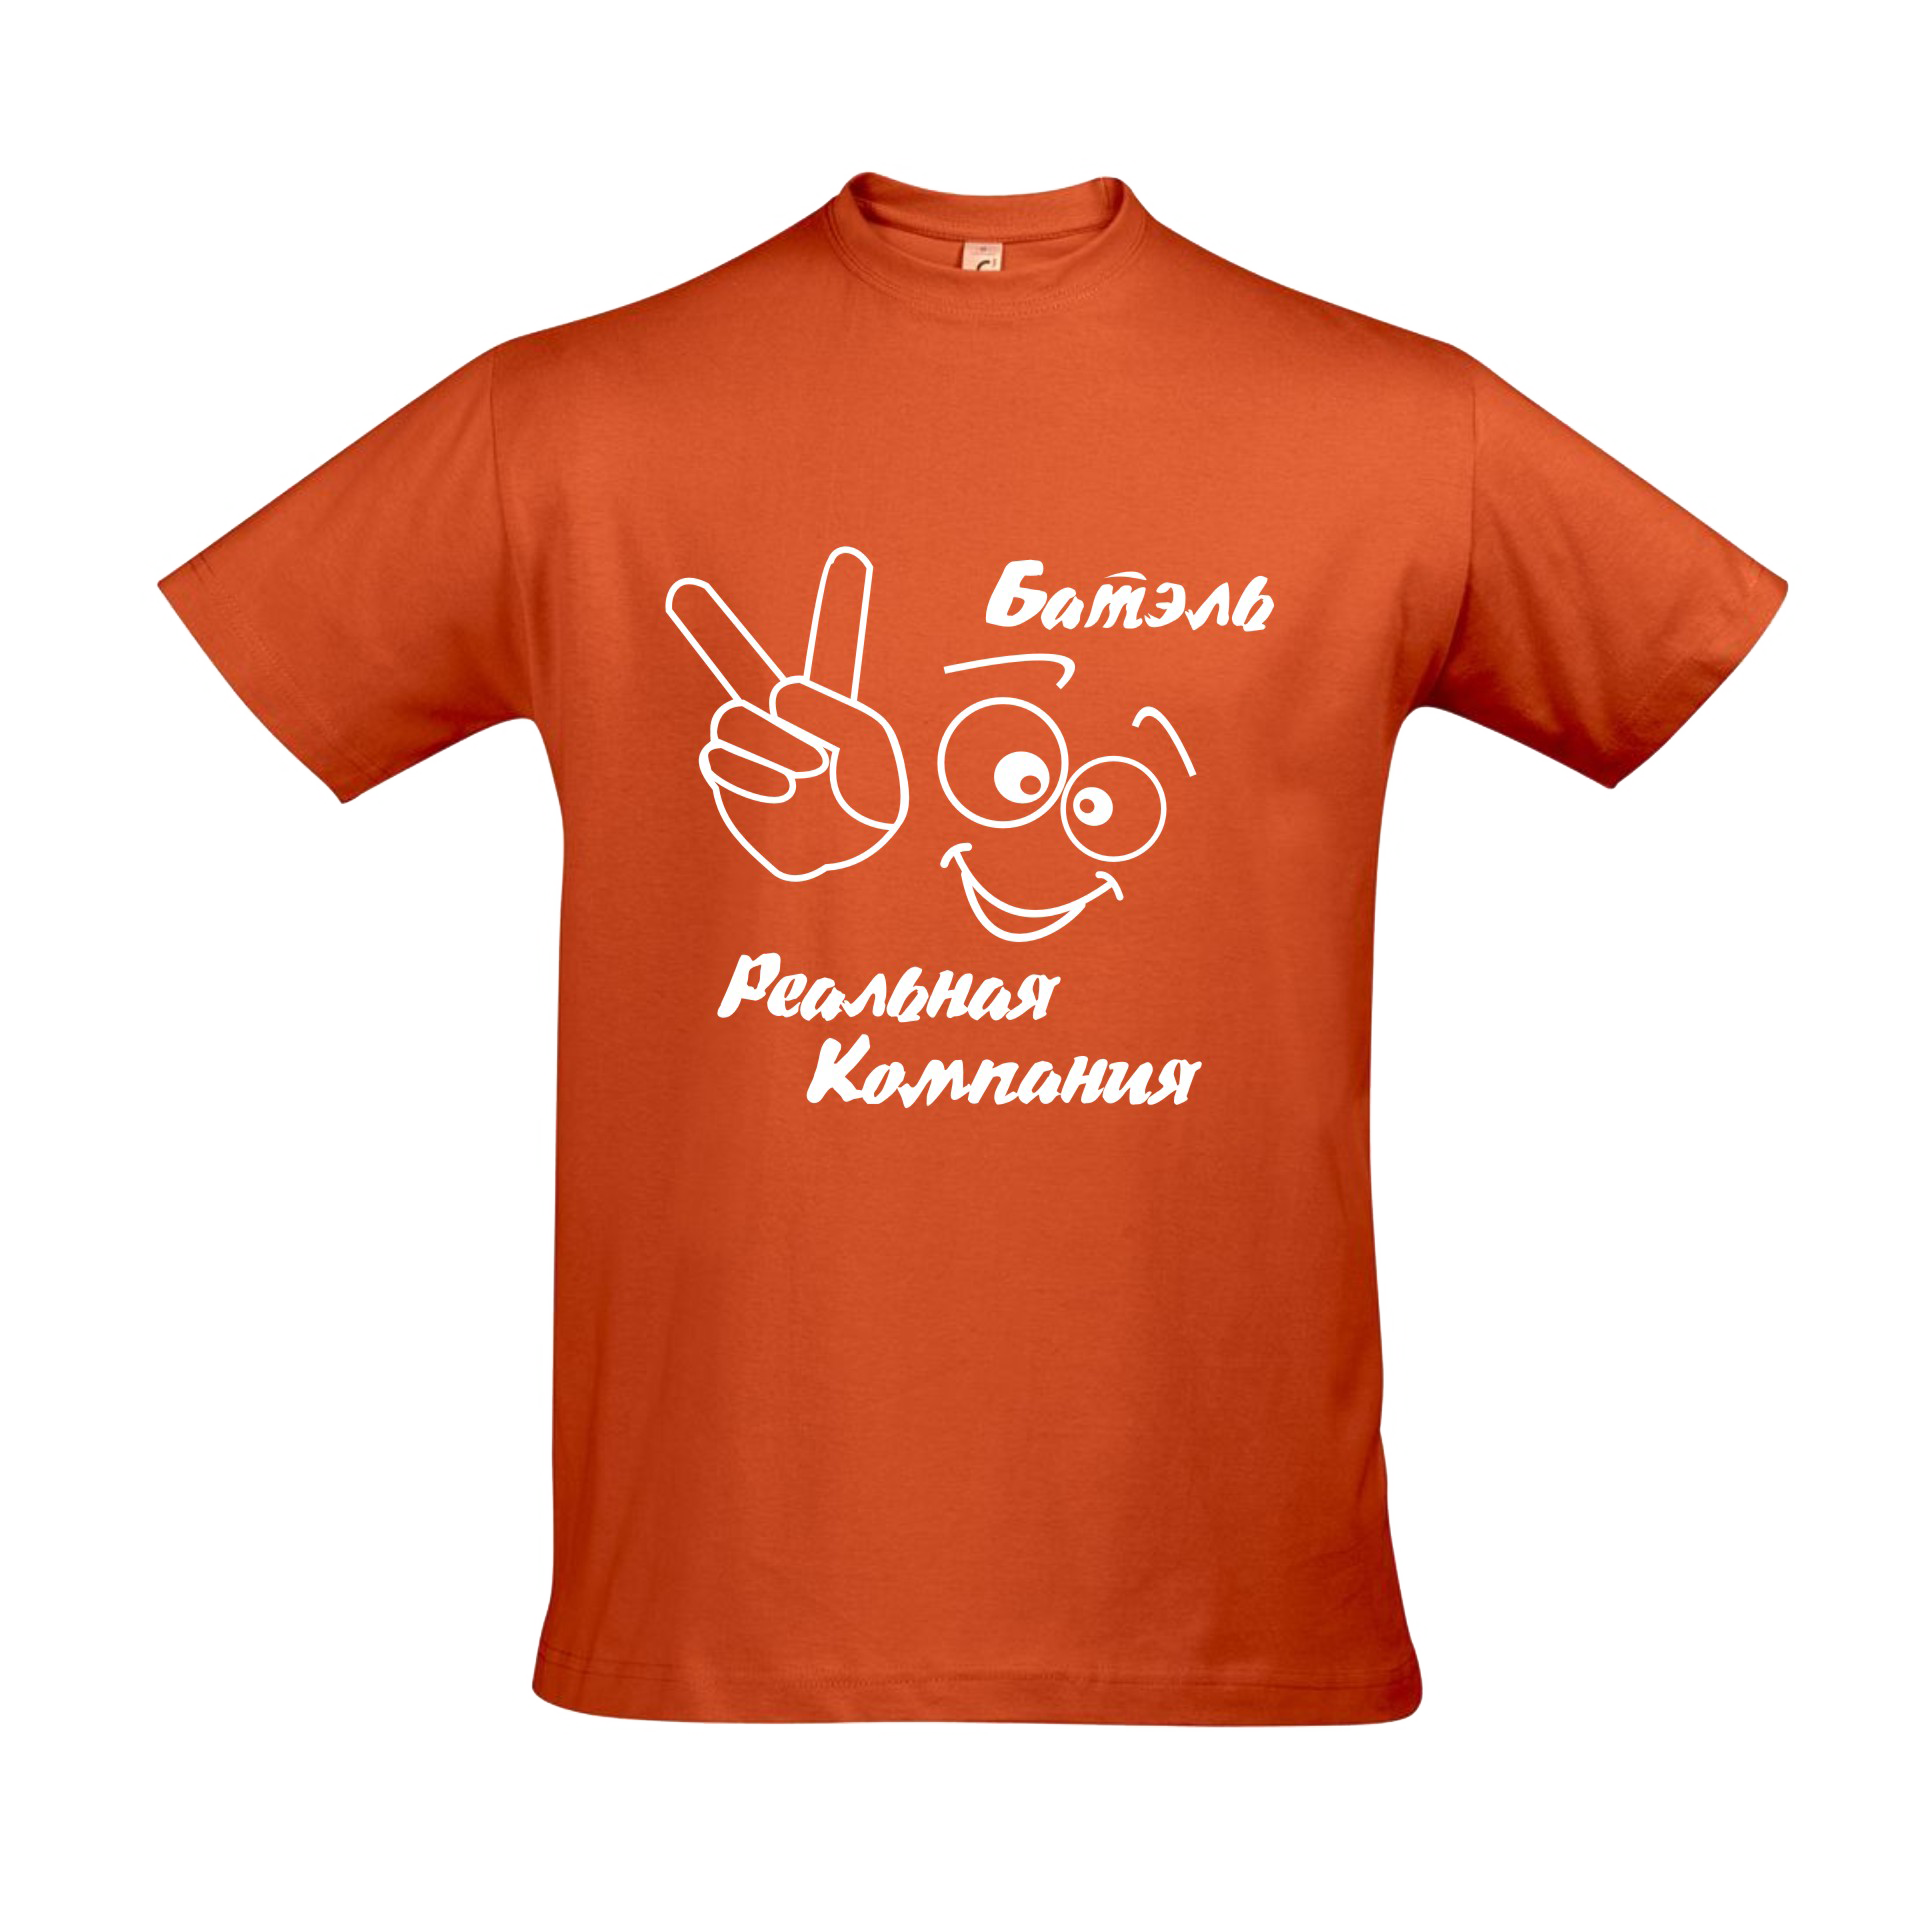 OrangeT-Shirt PNG Image